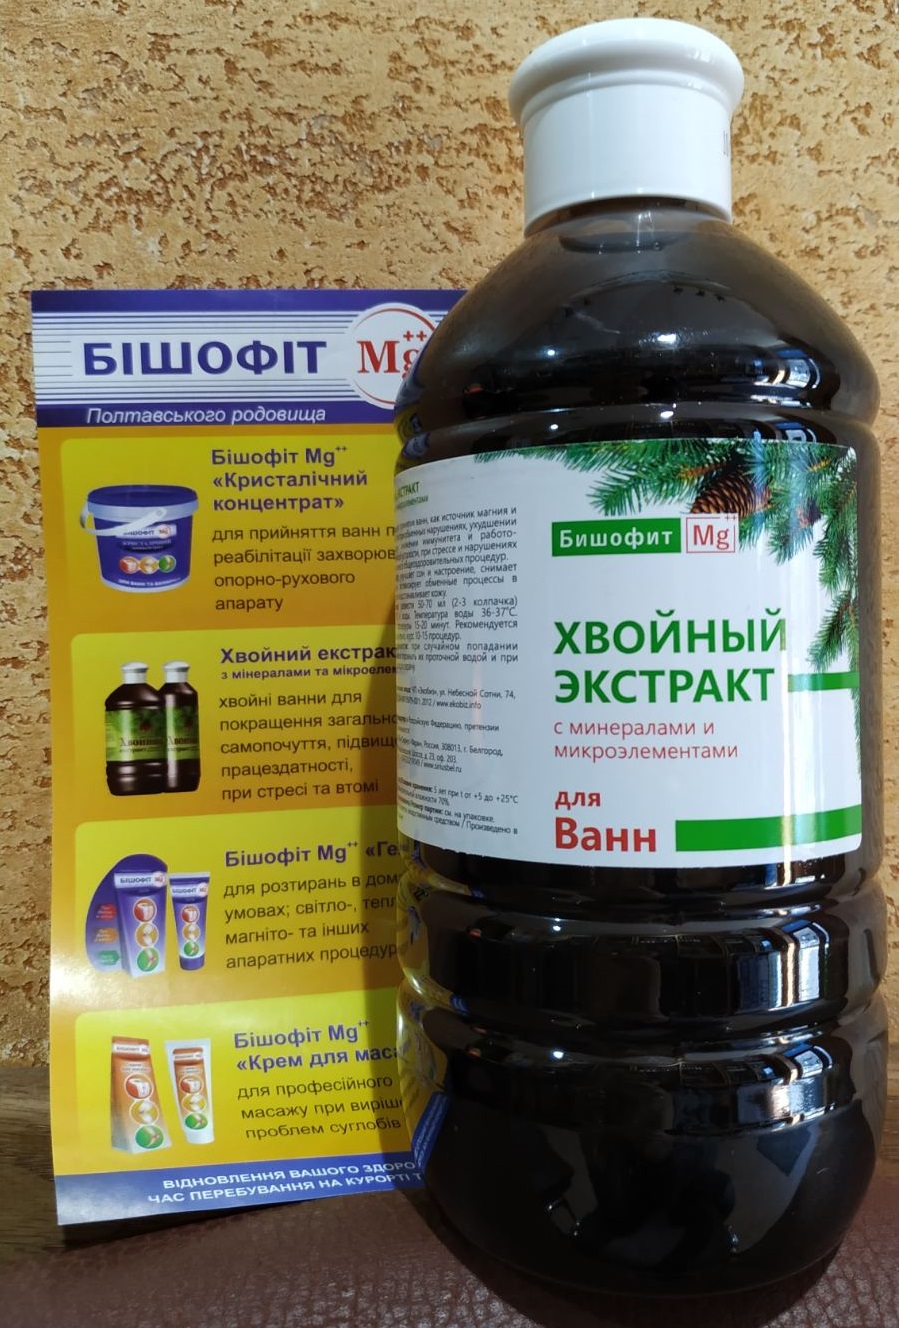 Хвойный экстракт с минералами и микроэлементами (Бишофит), 1 литр